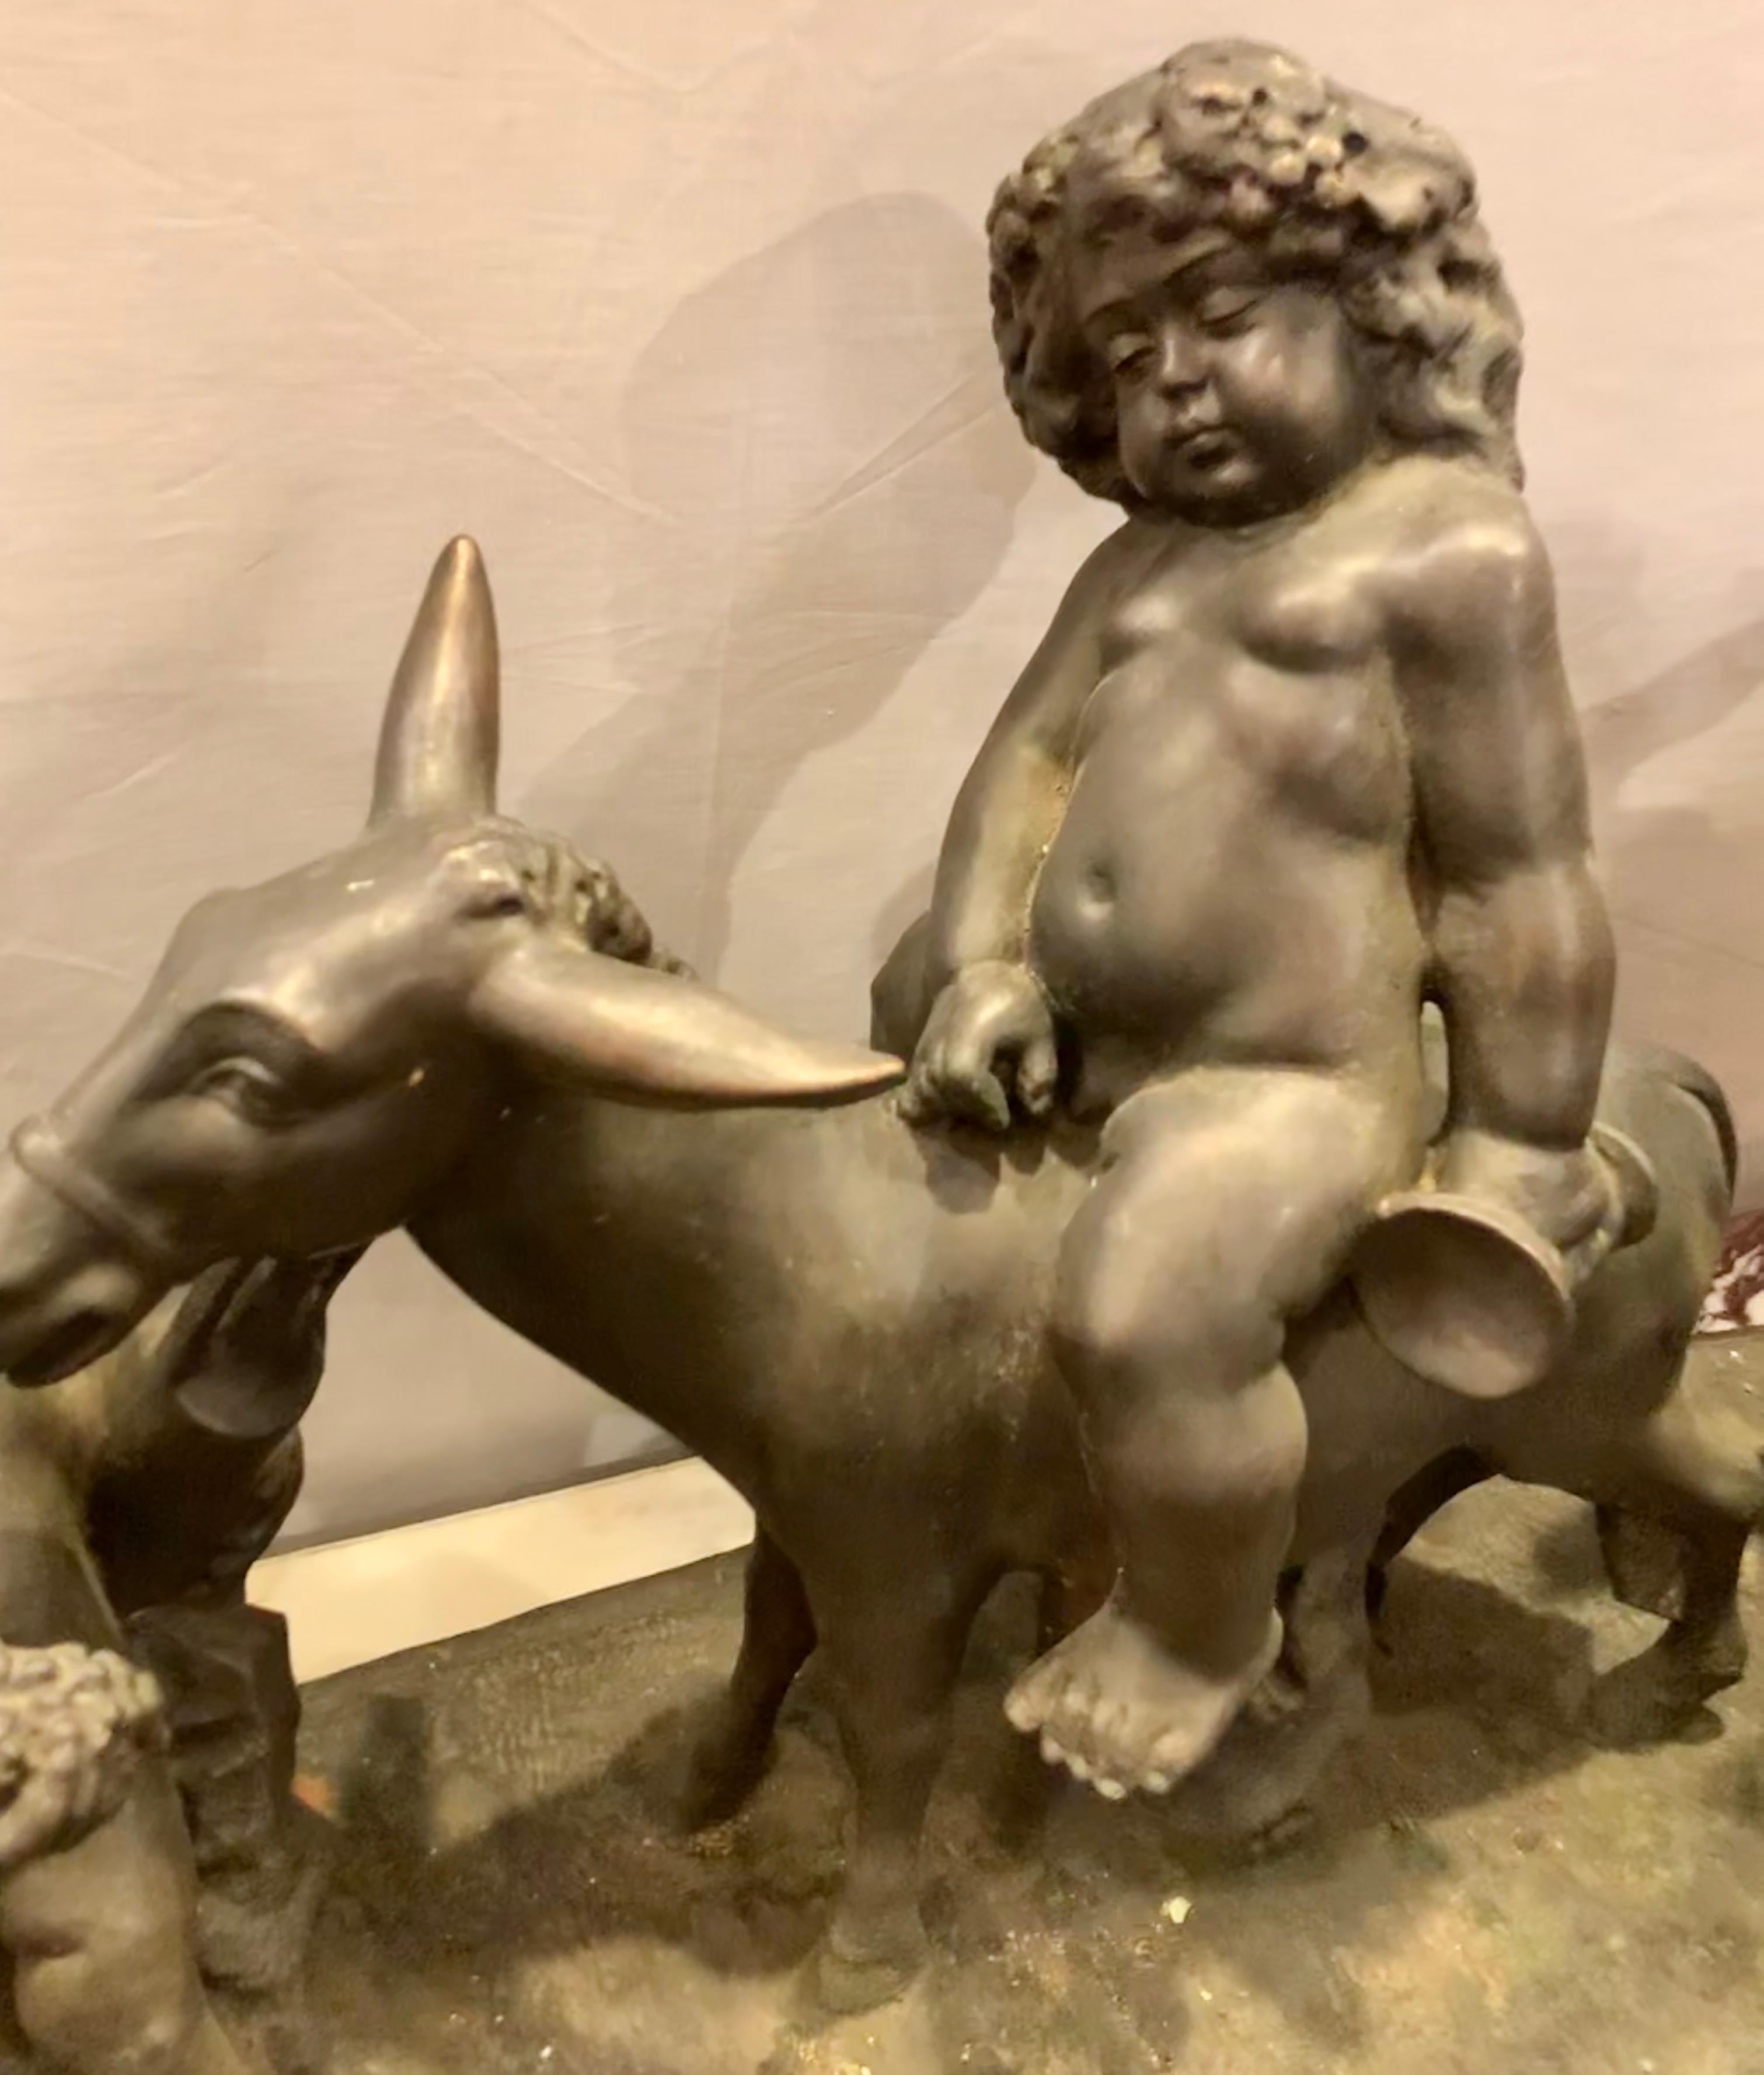 20th Century Antique Bronze Cherub Group Sculpture or Centerpiece of Drunken Playing Cherubs